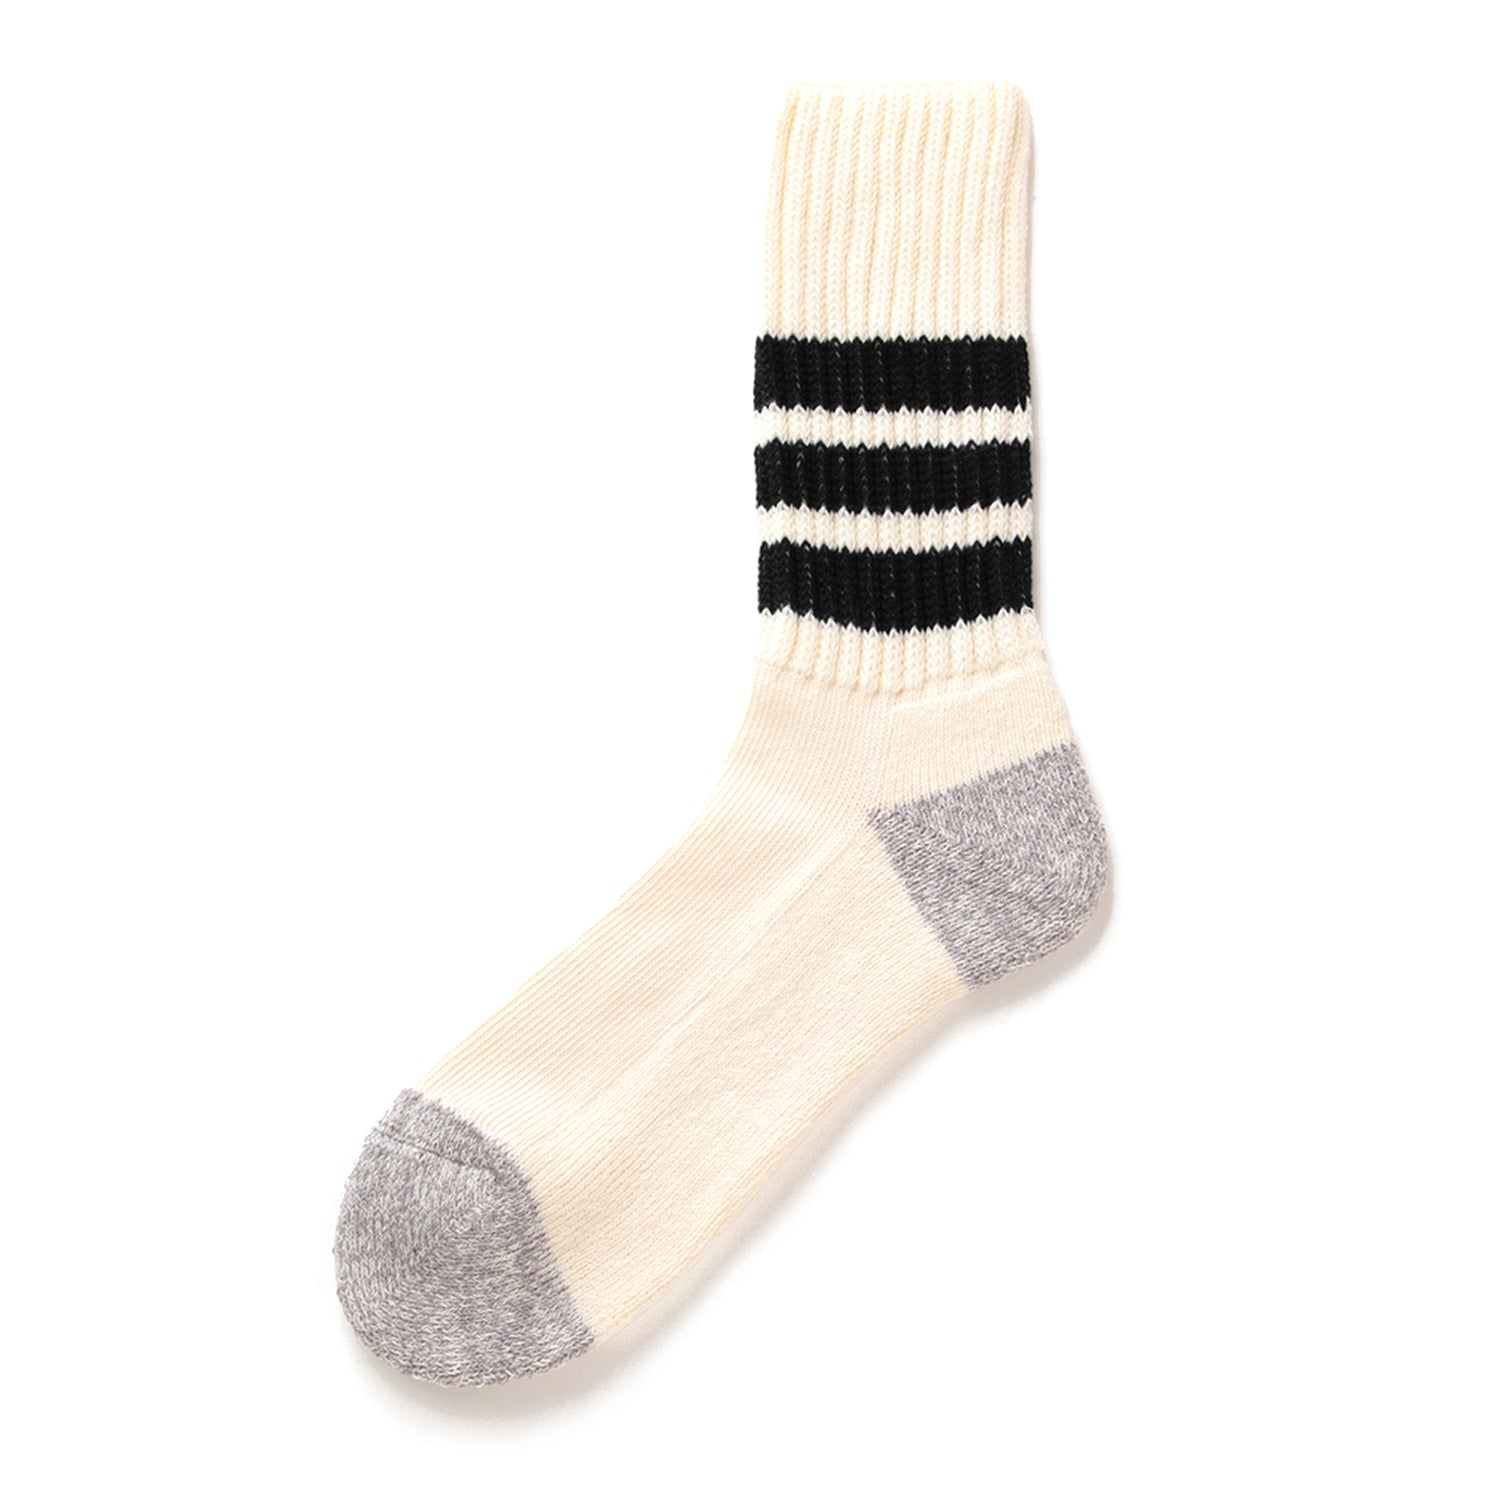 RoToTo Ribbed Old School Socks - Black